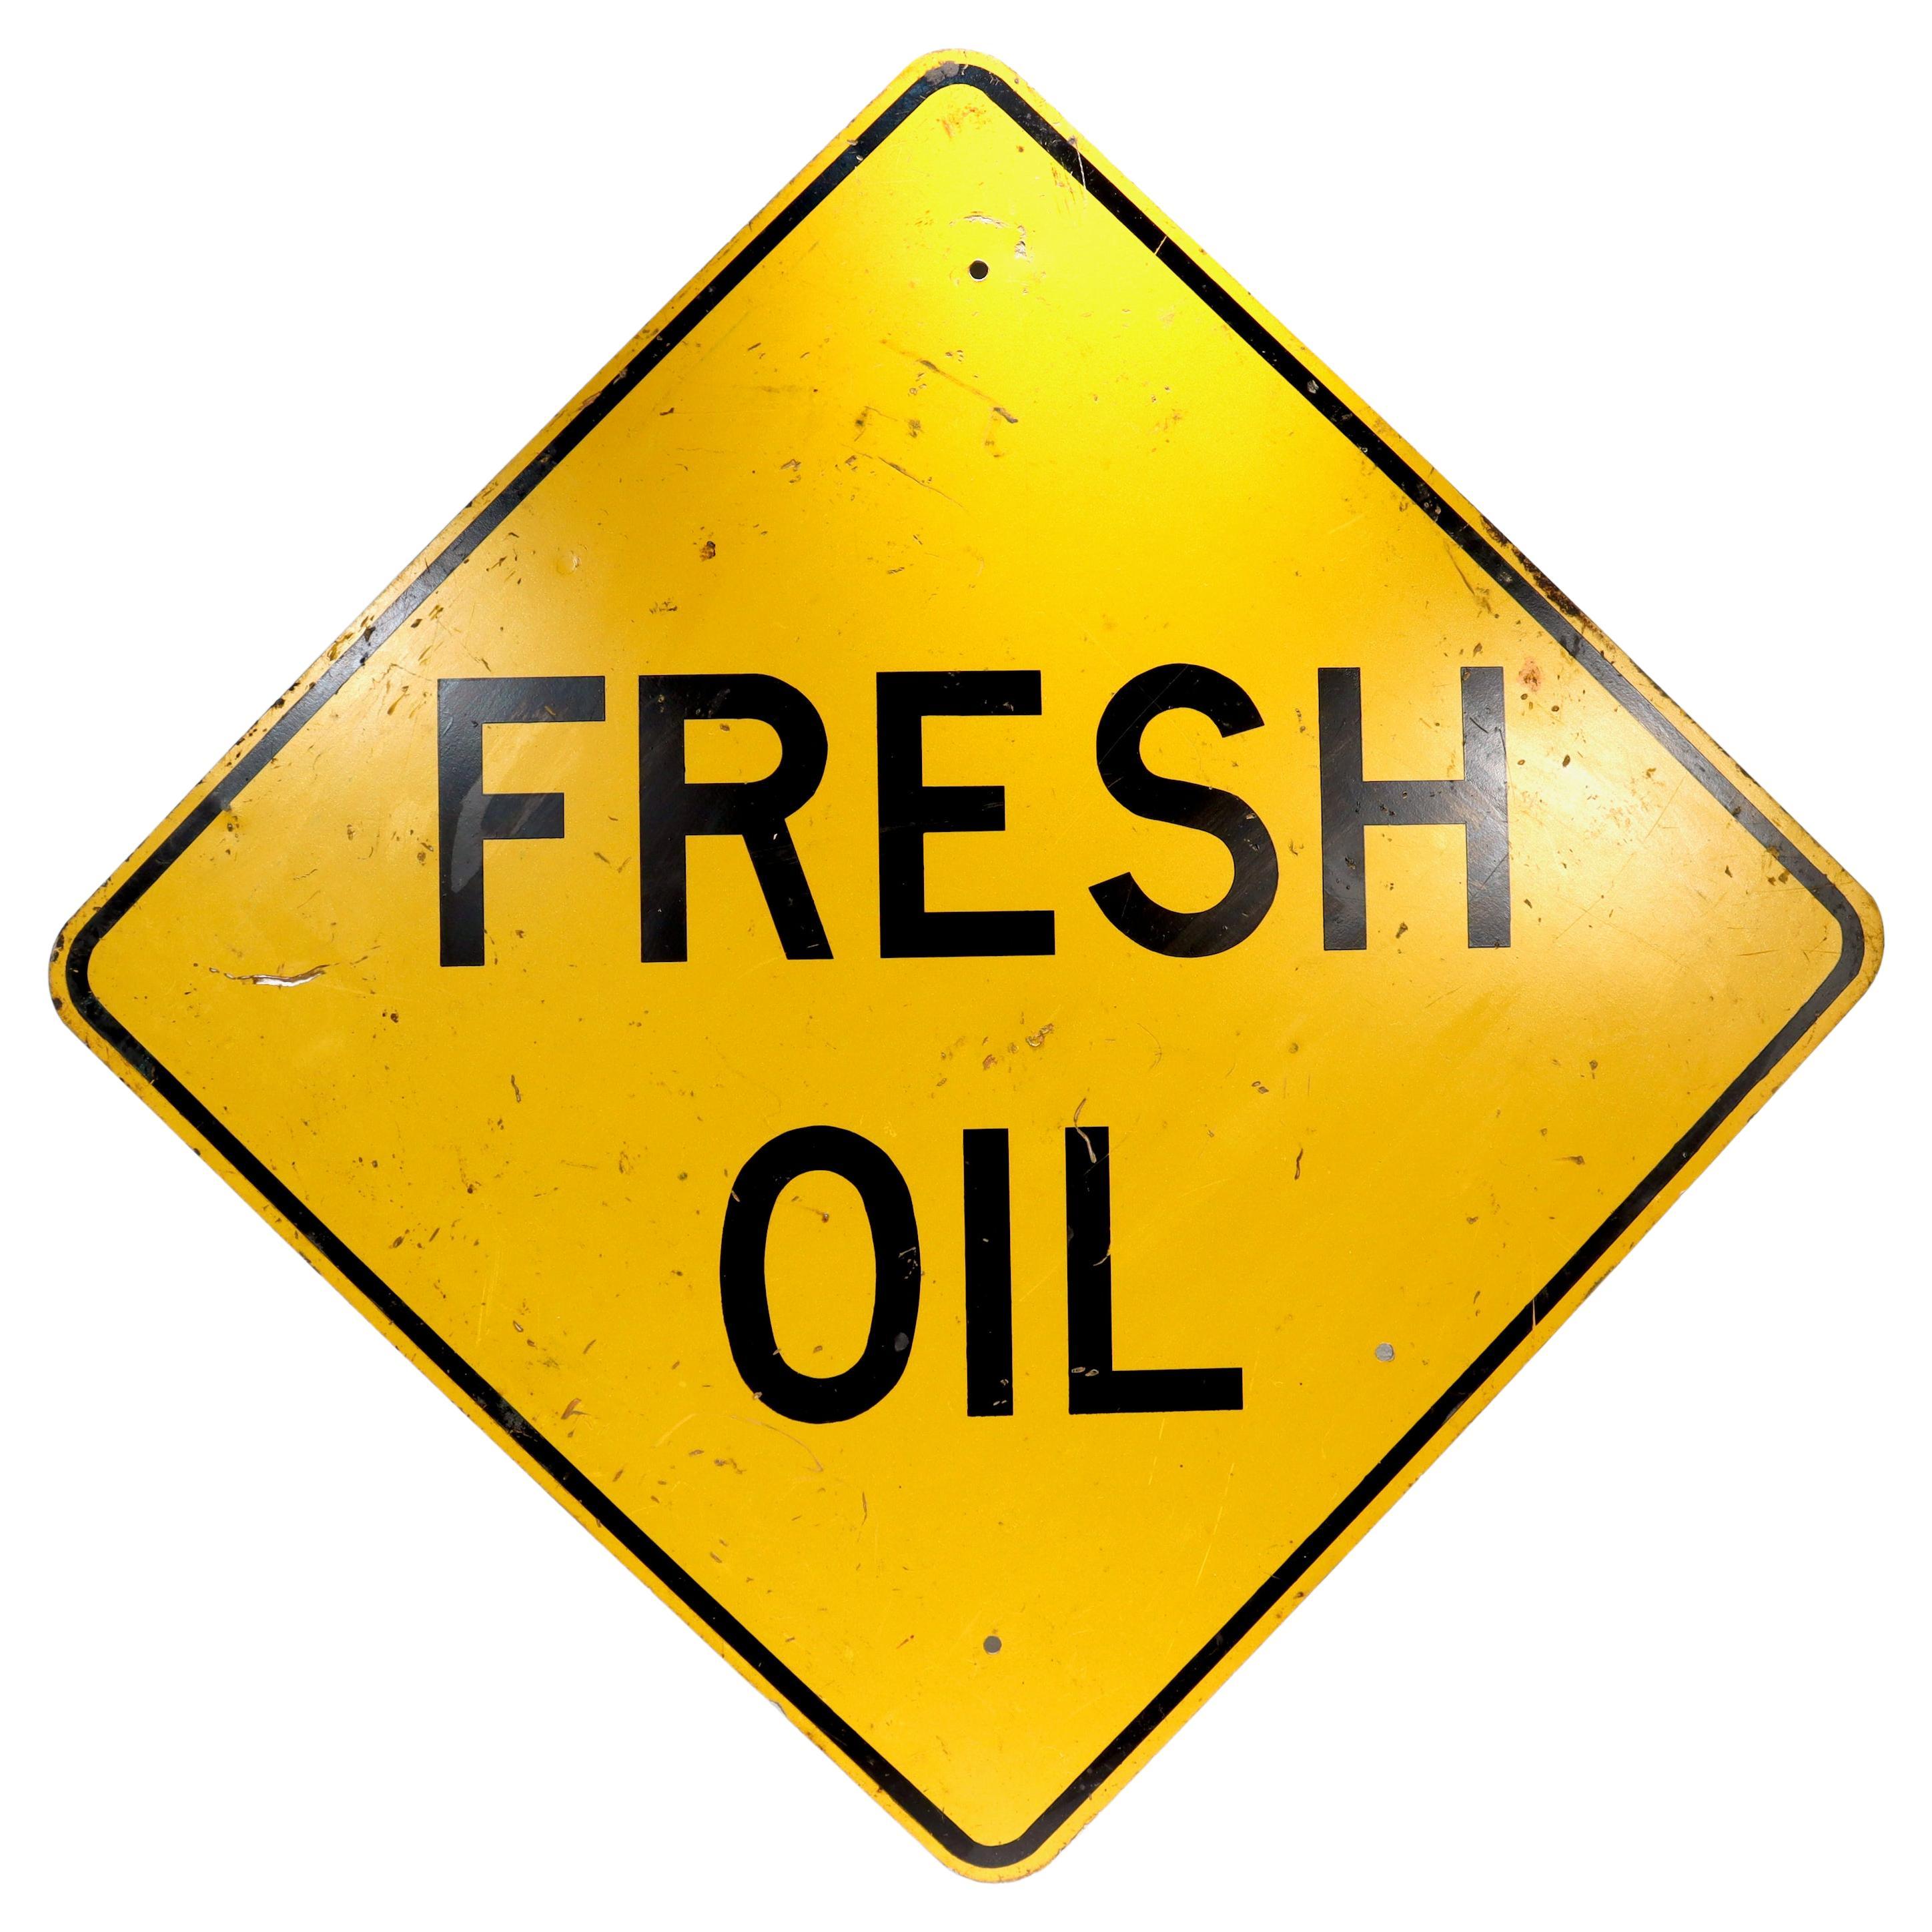 Gelb-schwarz lackiertes Stahl 'FRESH OIL' Straßen- oder Straßenschild